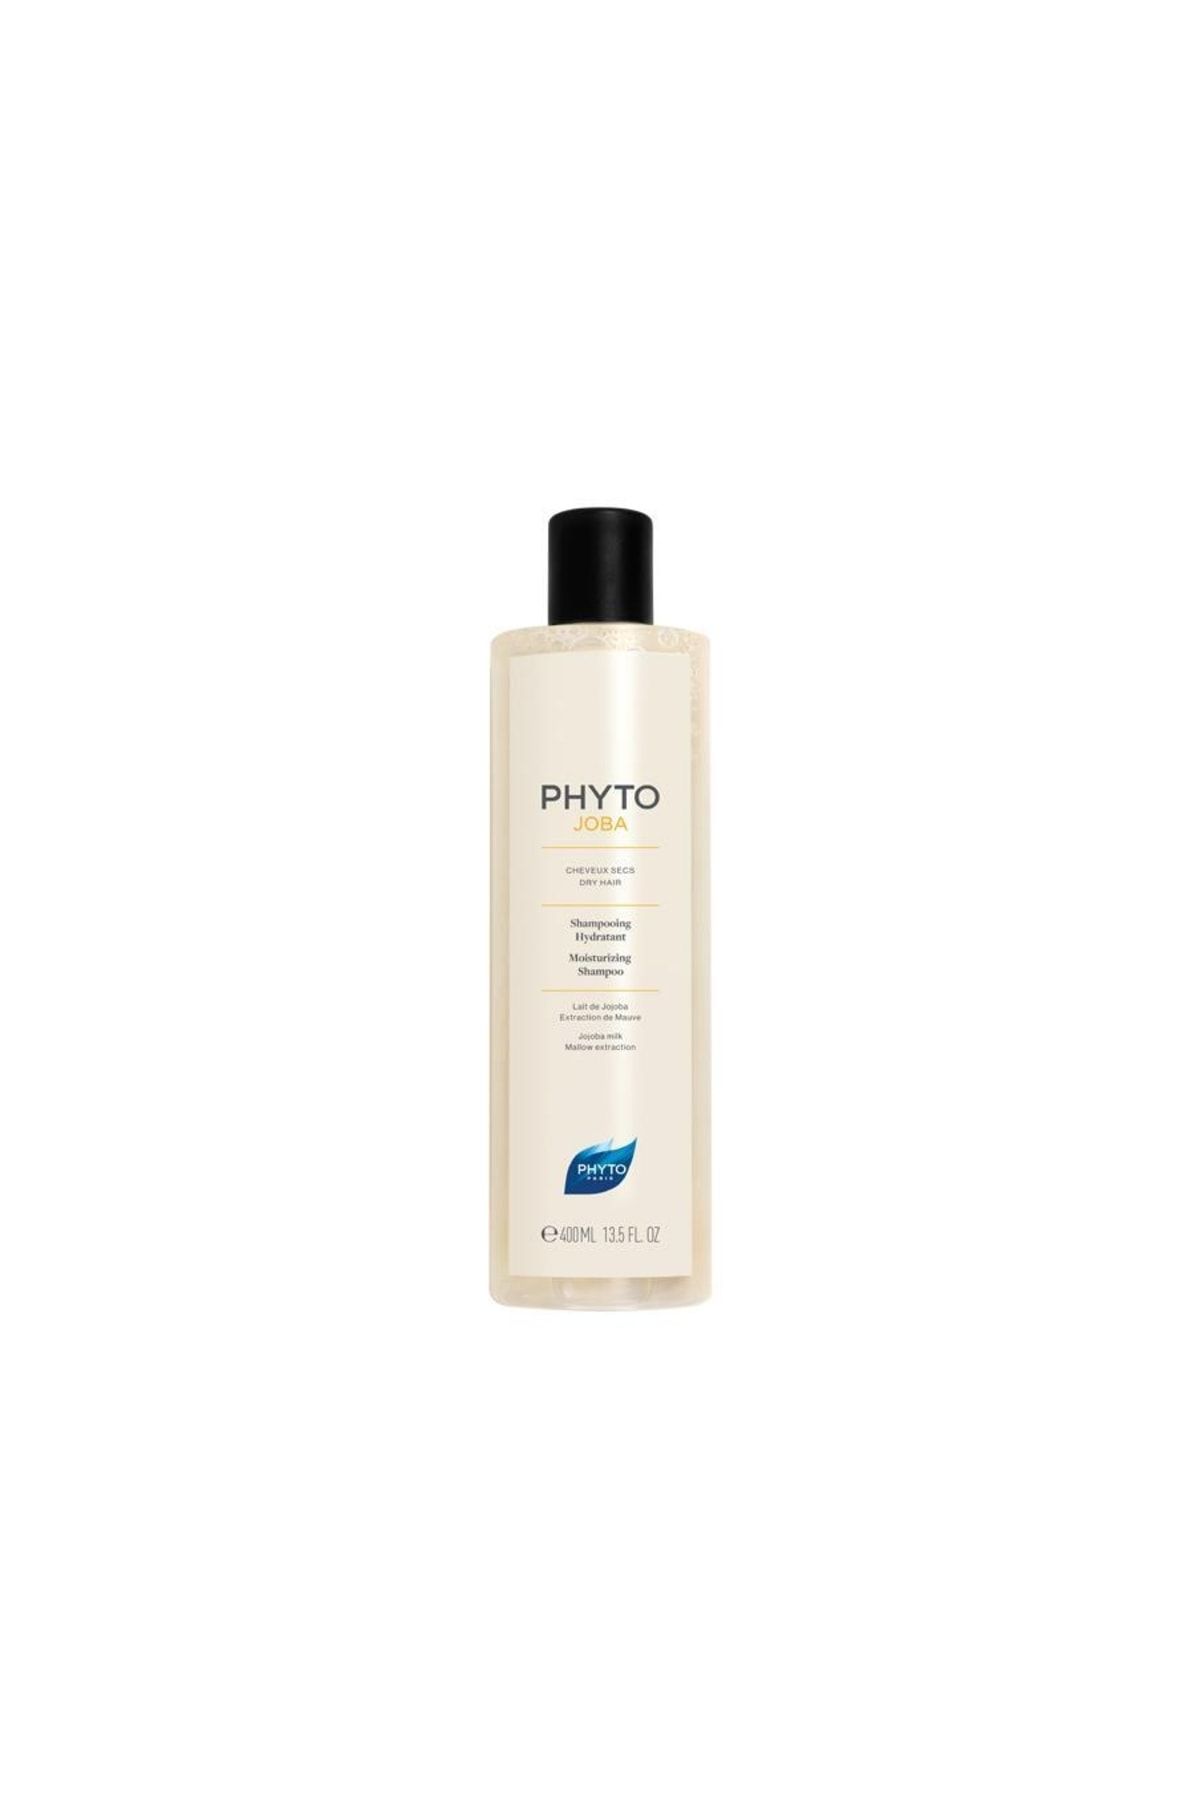 Phyto JOBA Shampoo Kuru Saçlar için Yoğun Nemlendirici Şampuan 400 ml